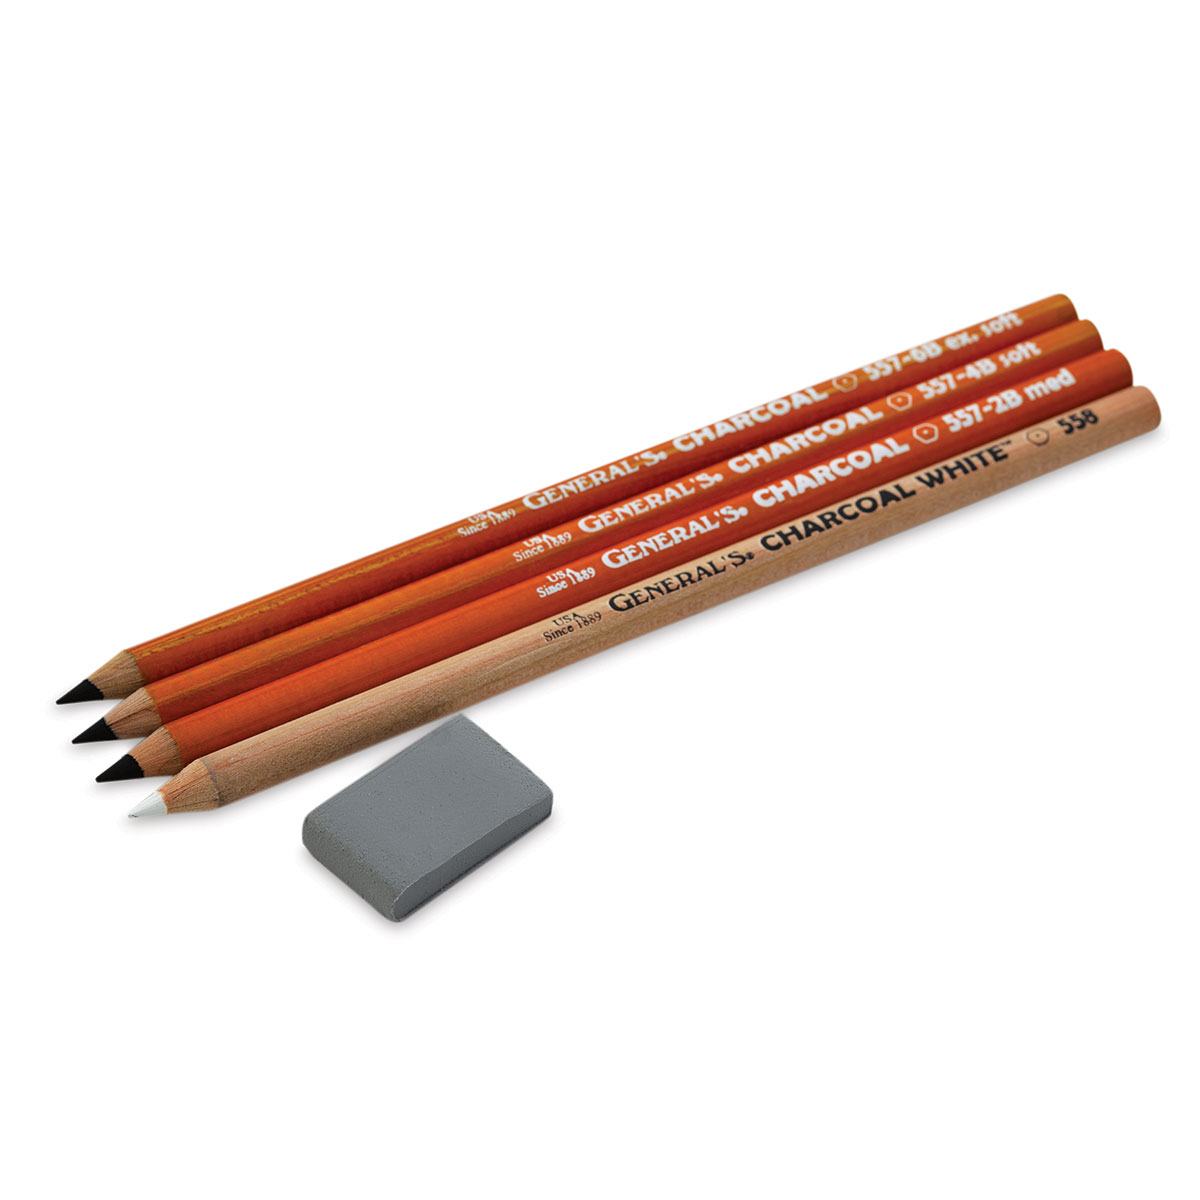 General's Charcoal Pencil Set - Classroom Assortment, Set of 72